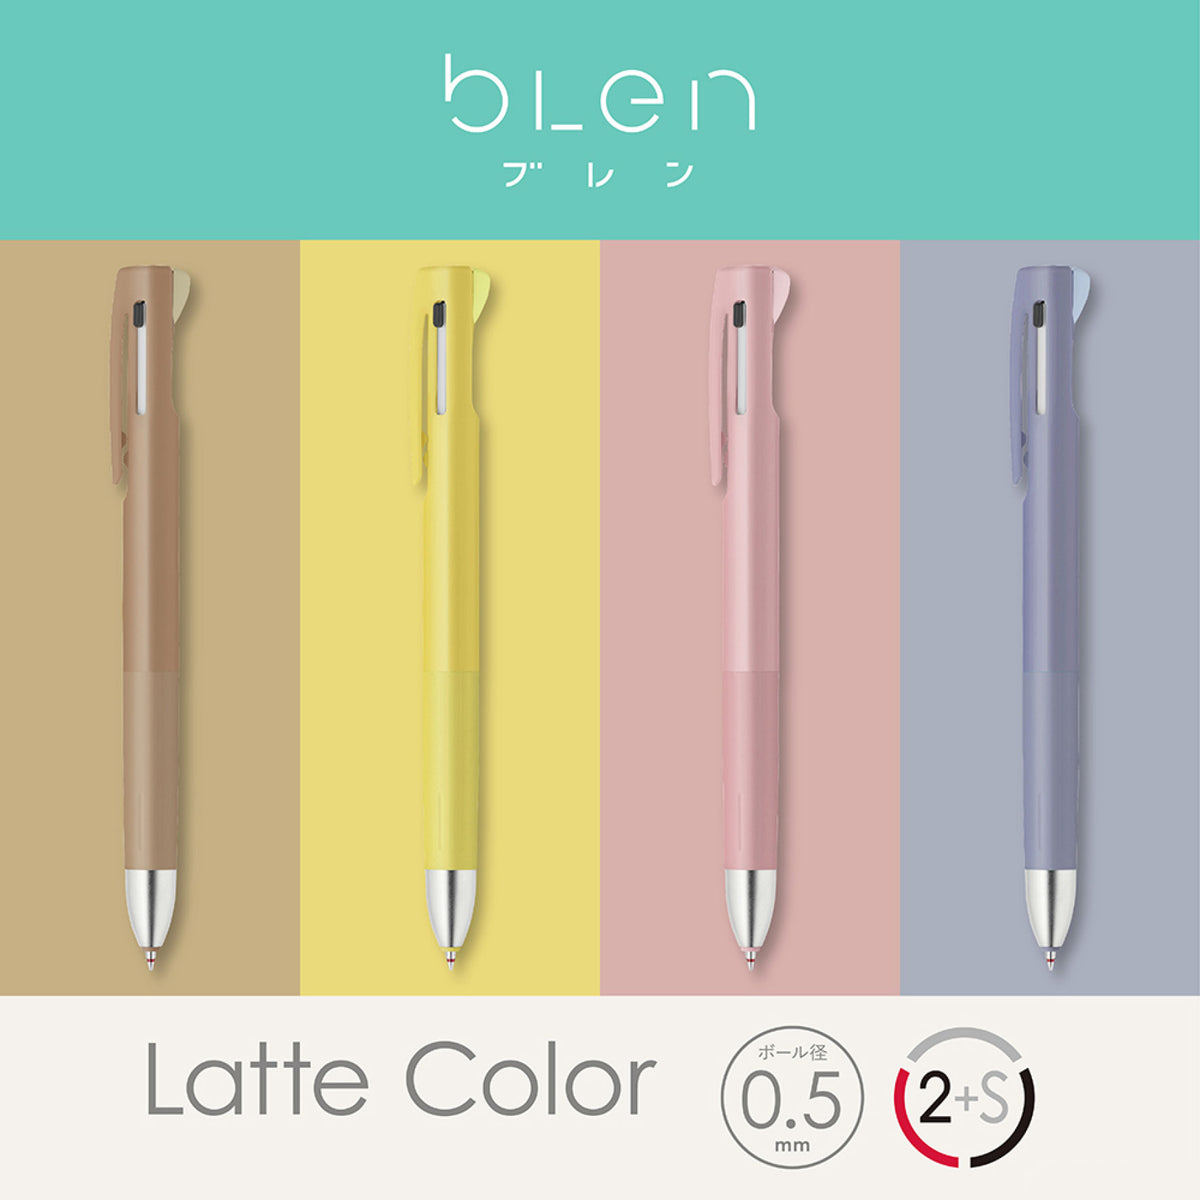 Zebra - Multi Pen - Blen 2·1 - 0.5mm - Latte Color - Banana